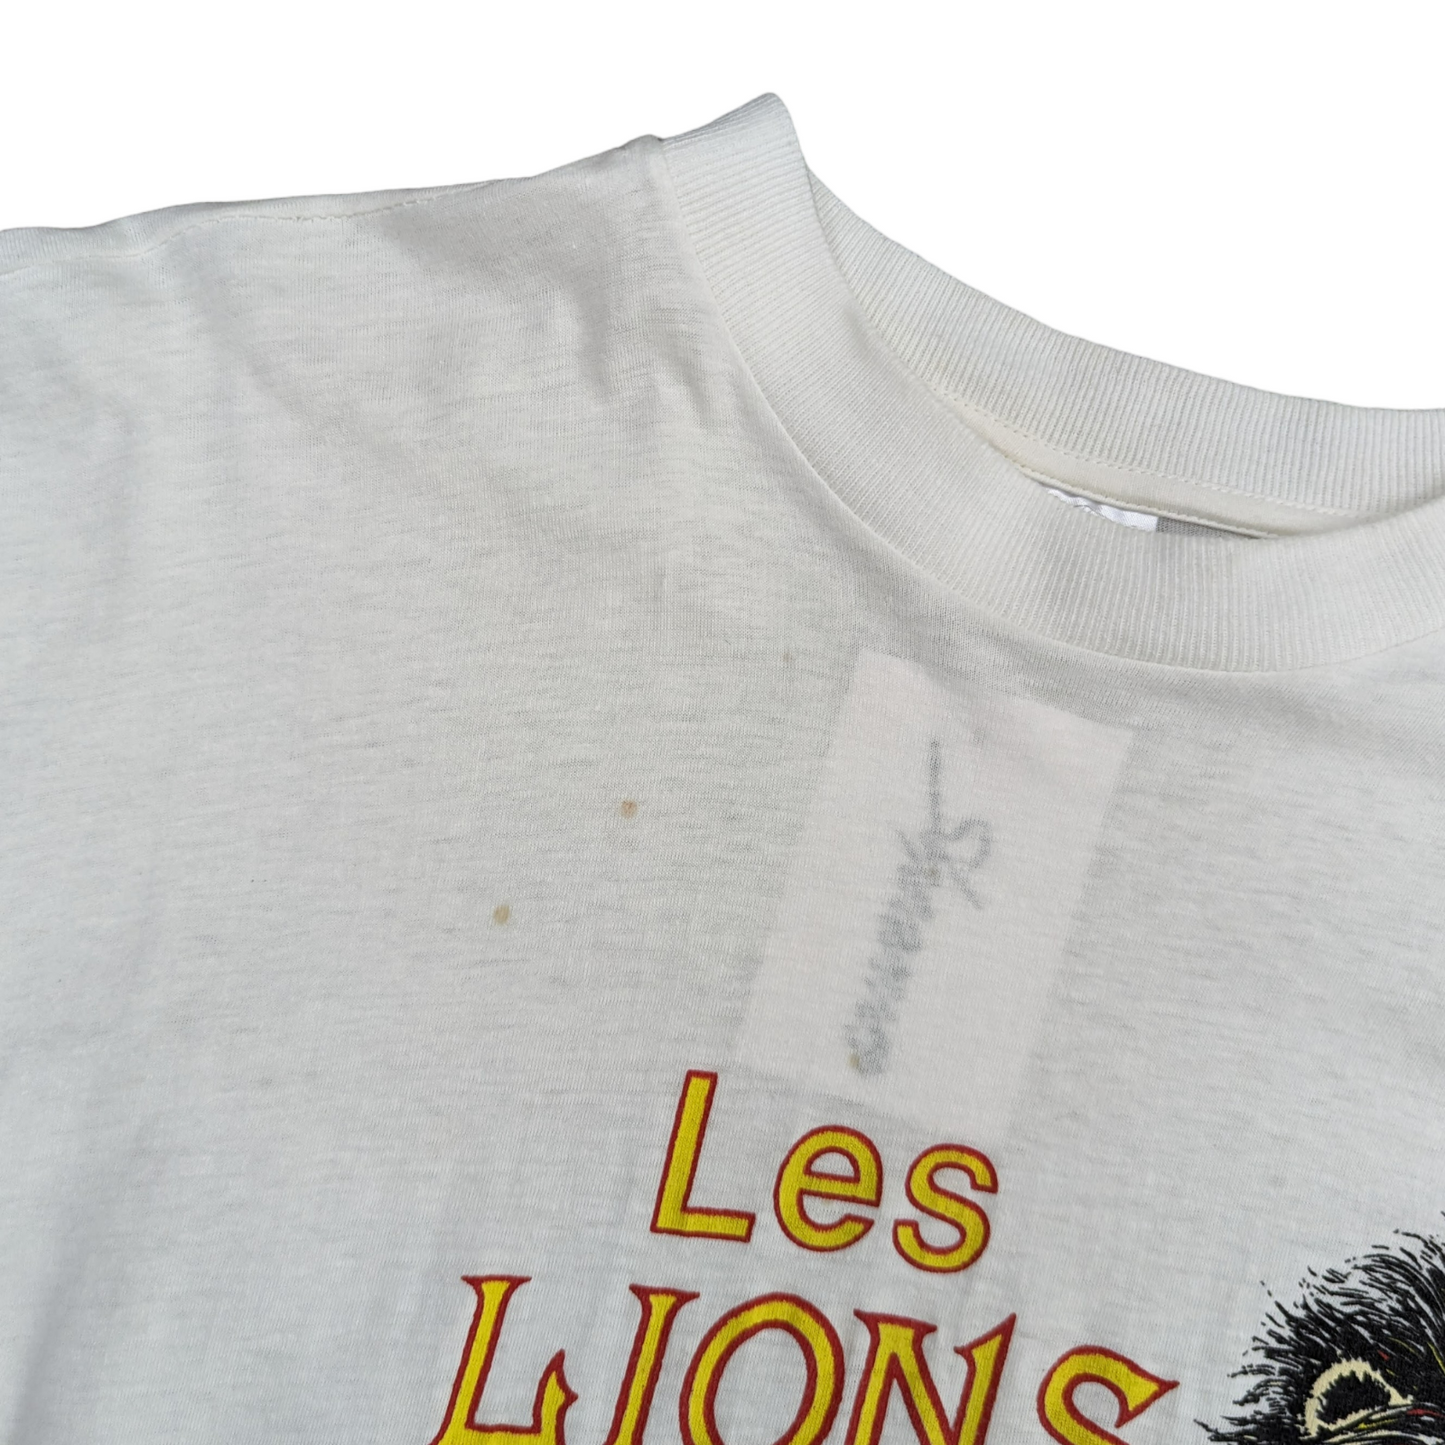 90s Les Lions Single Stitch T-Shirt Size M